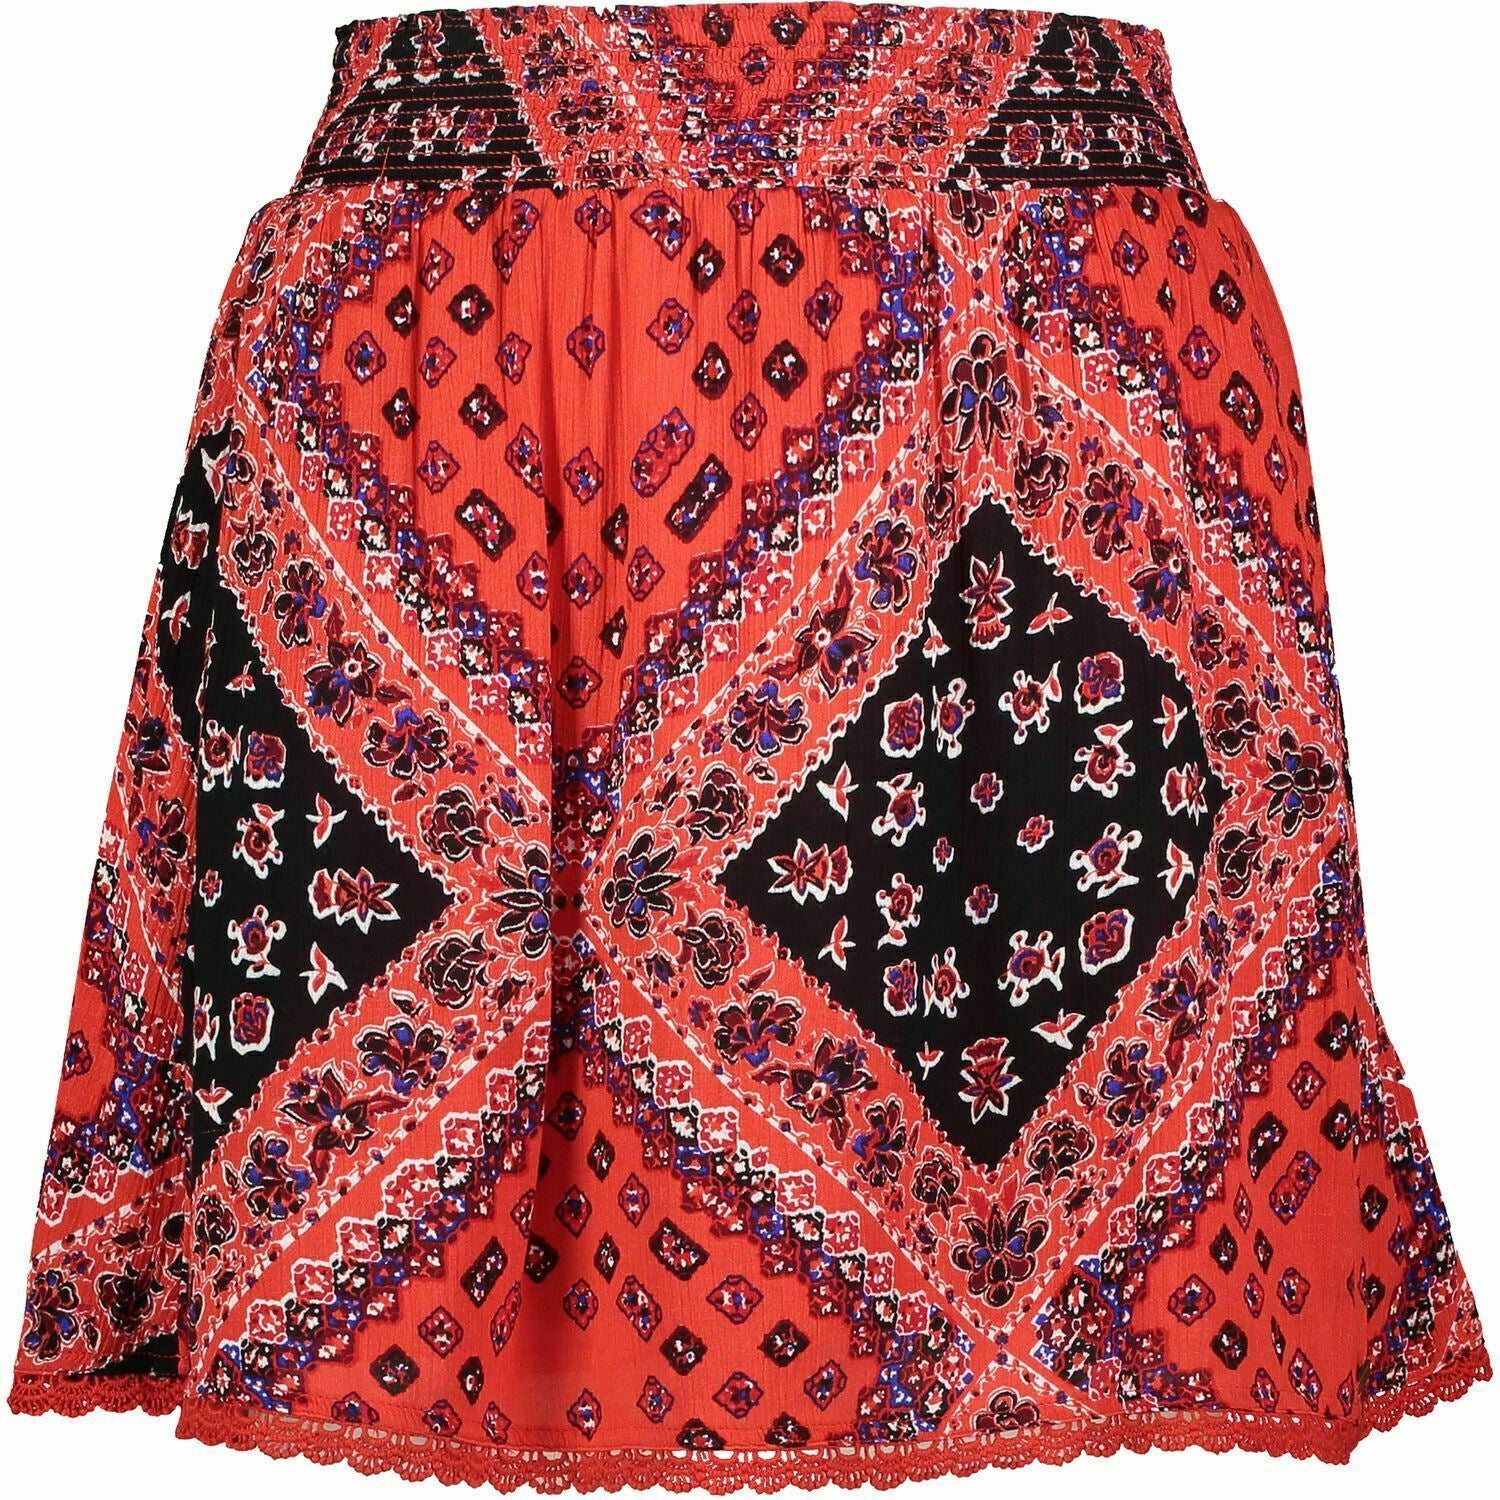 SUPERDRY Women's SARA Smocking Skirt, Siena Red Patchwork, size XS / UK 8